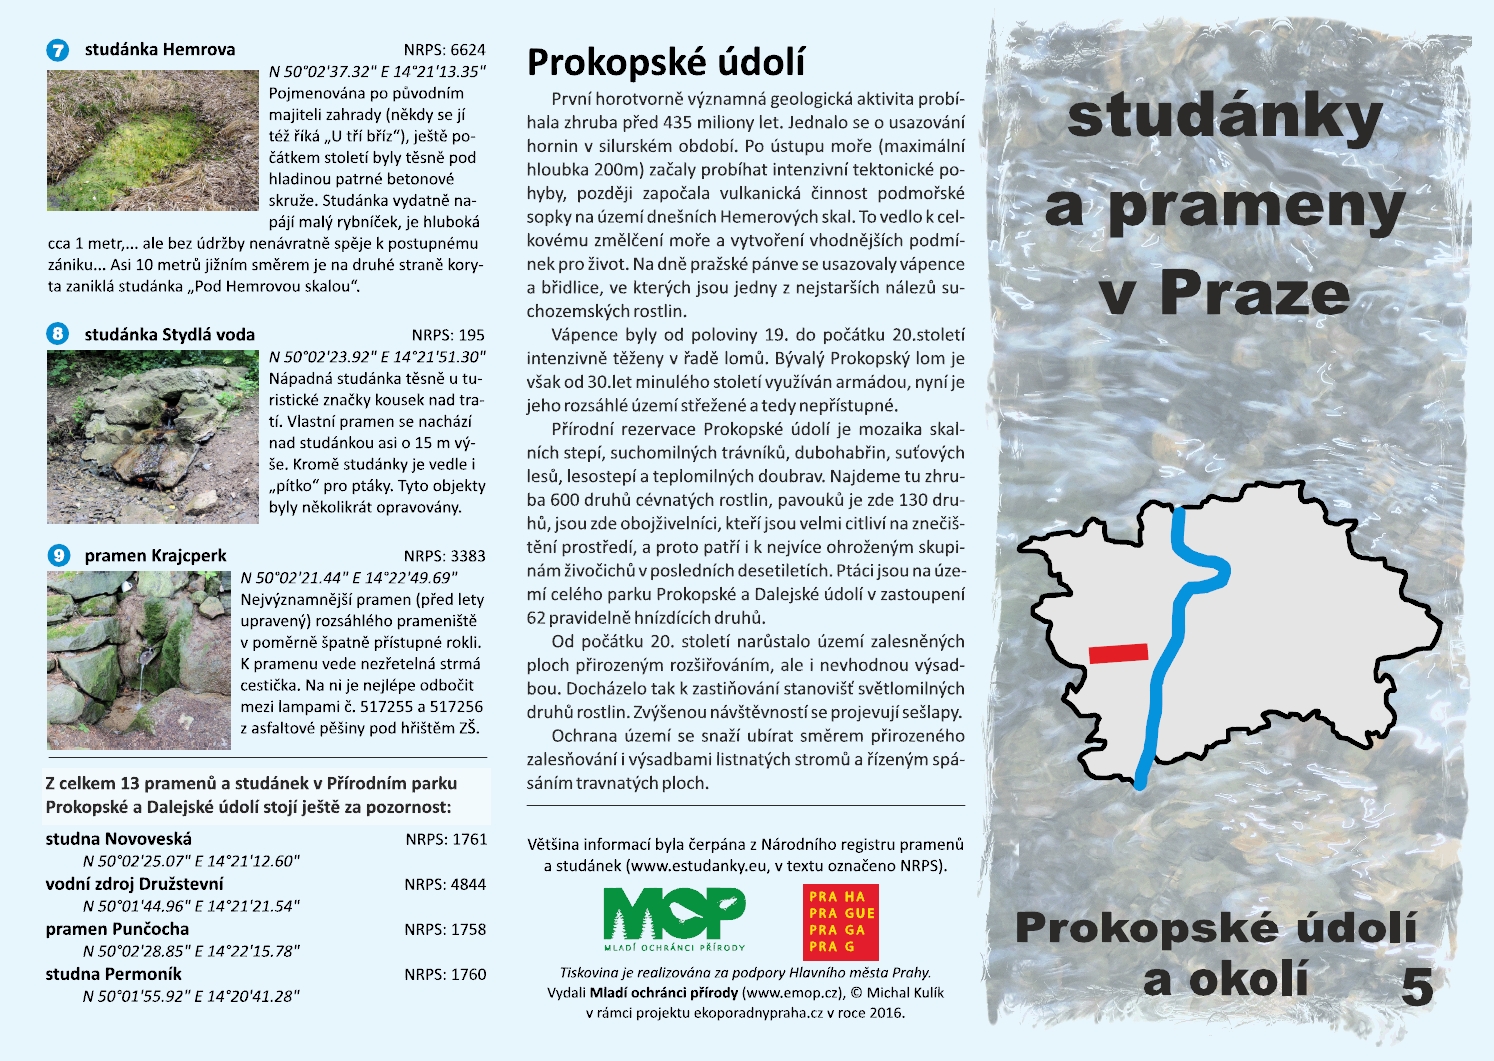 informační materiál Studánky a prameny v Praze, č.5 - Prokopské údolí a okolí, ilustrační obr.